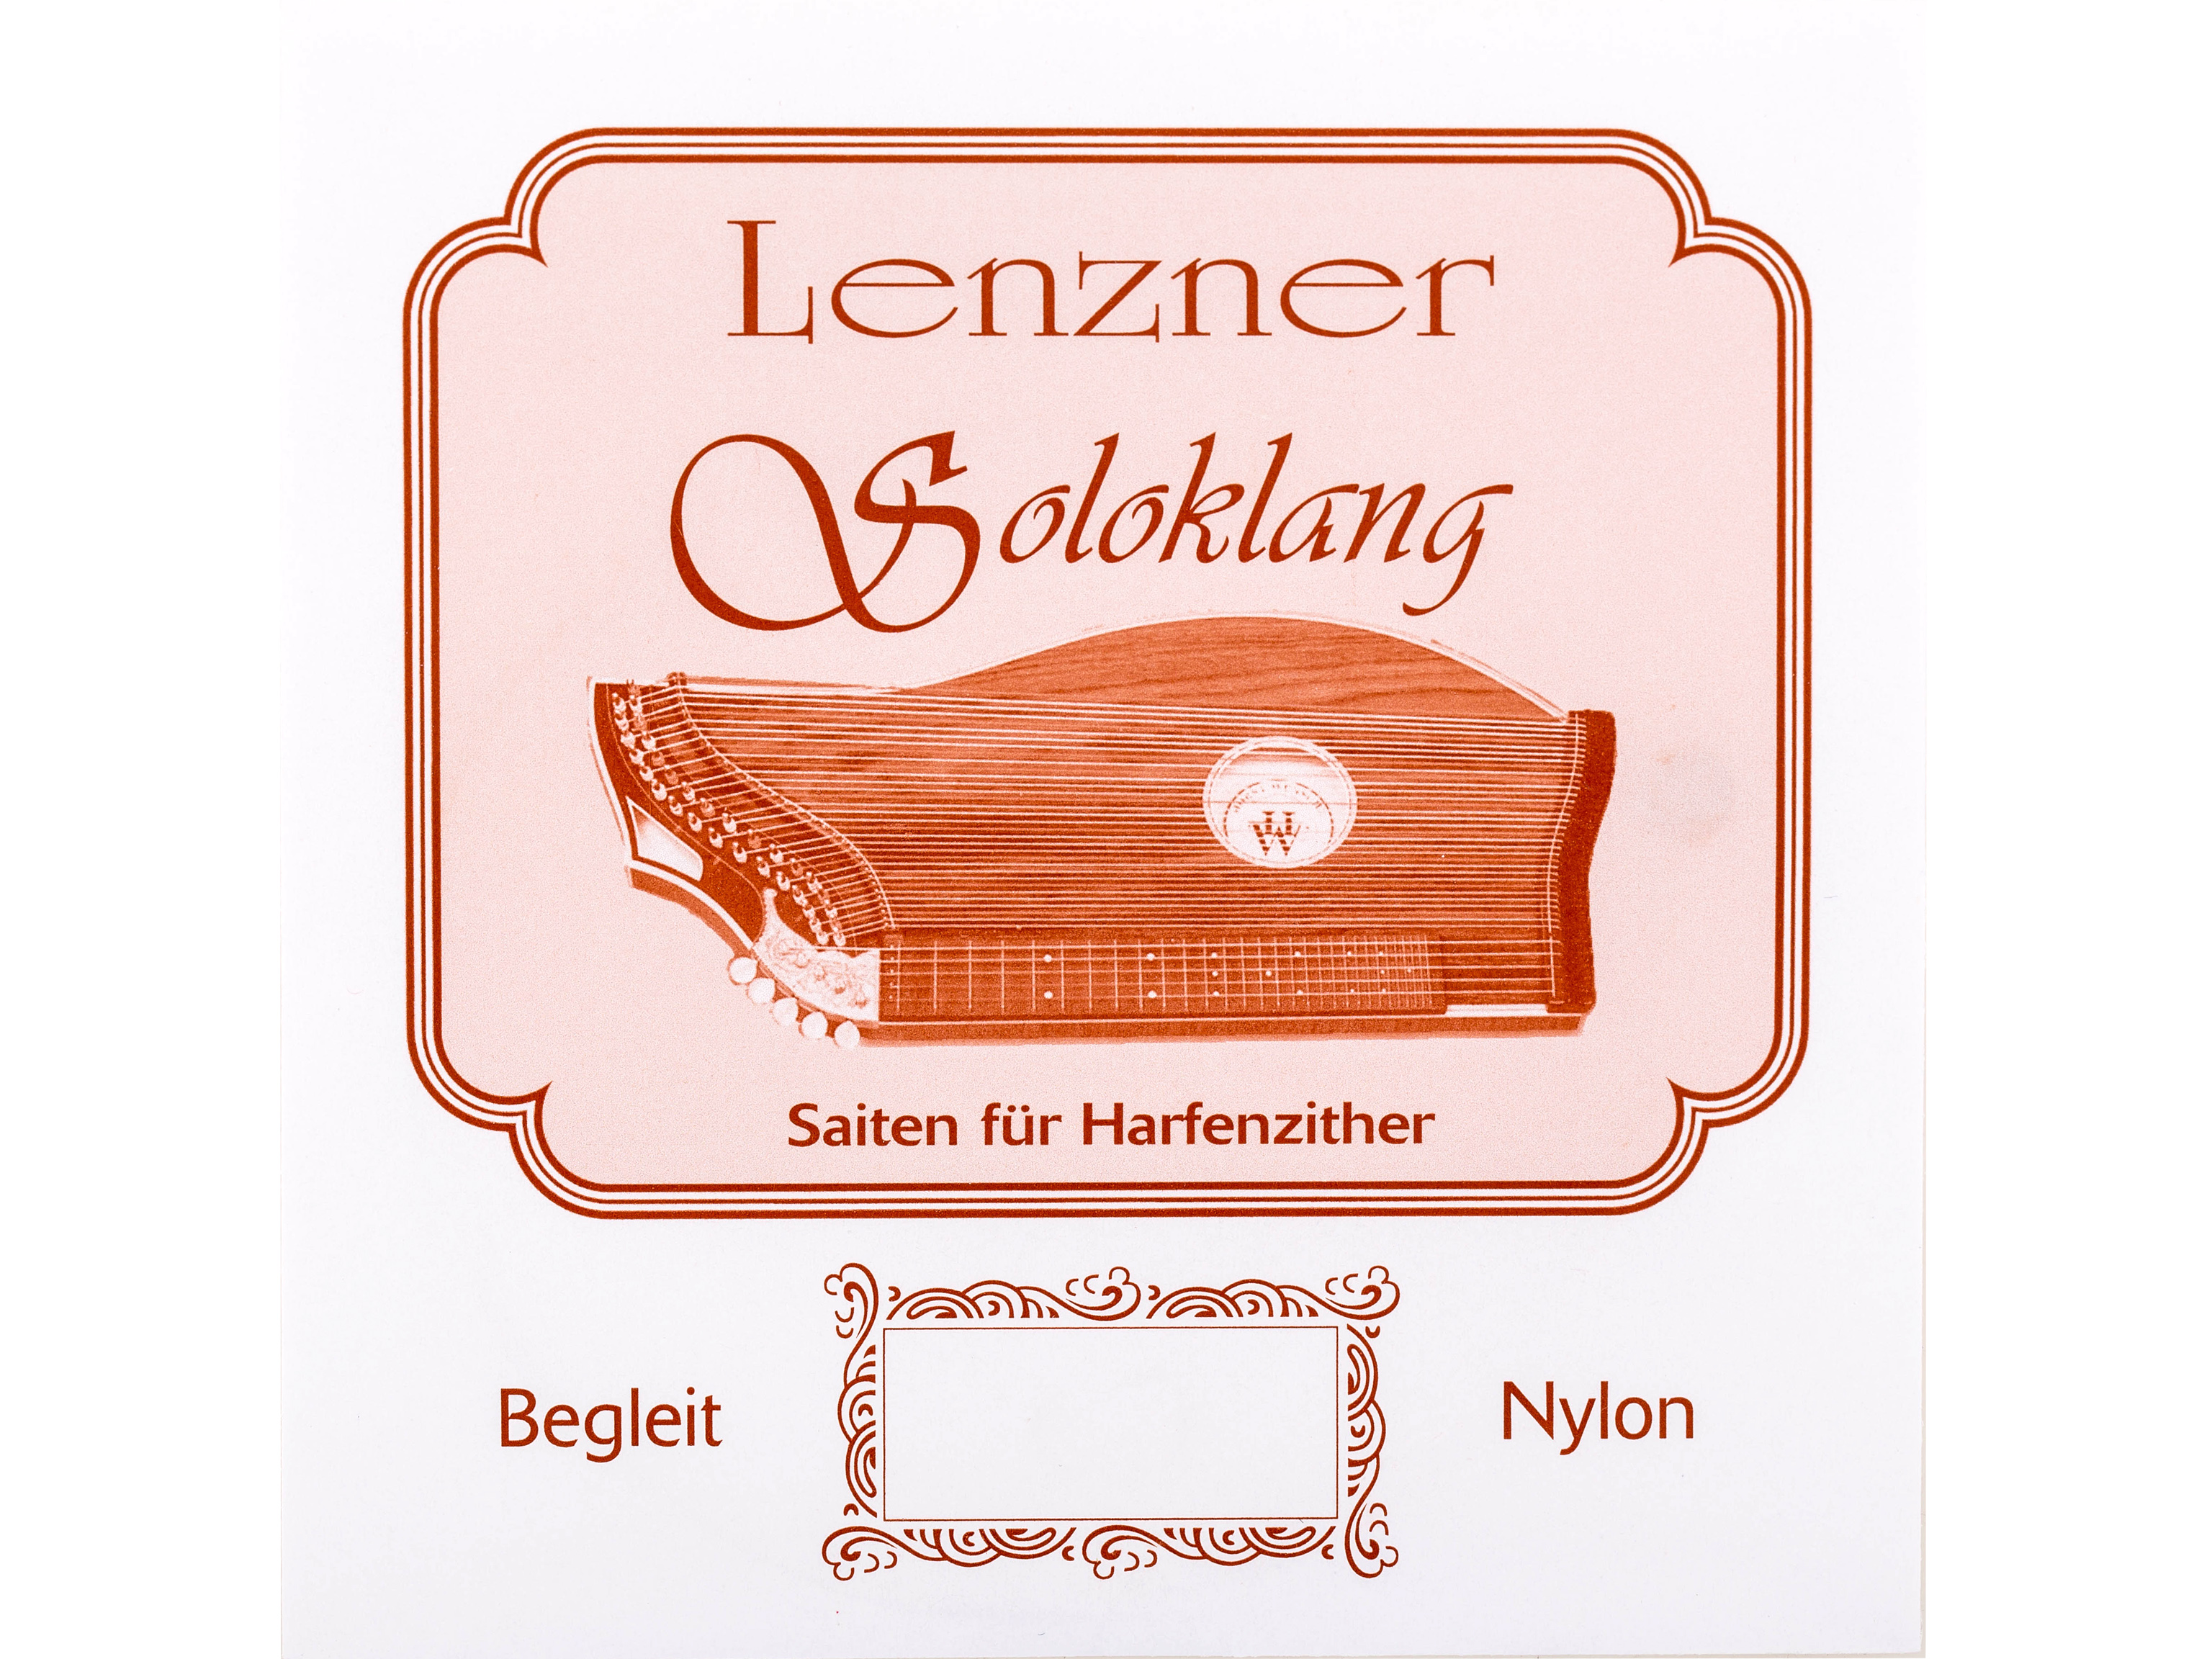 Lenzner 7. a Zithersaite Soloklang Begleit